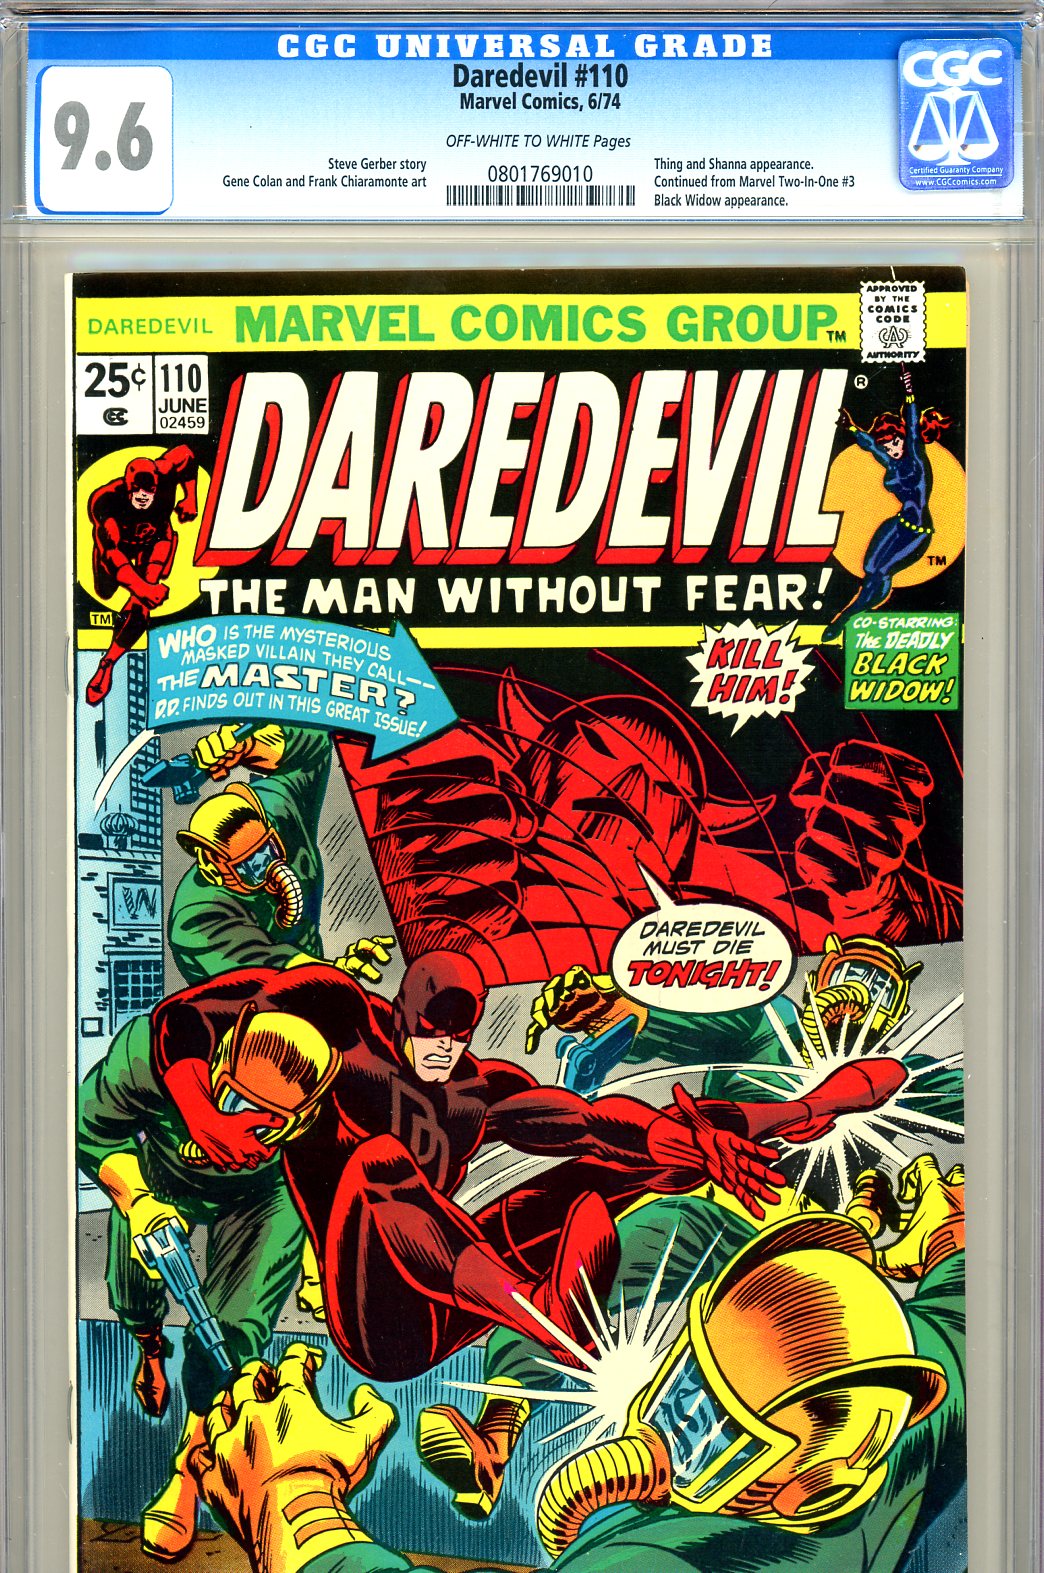 Daredevil #110 CGC 9.6 ow/w